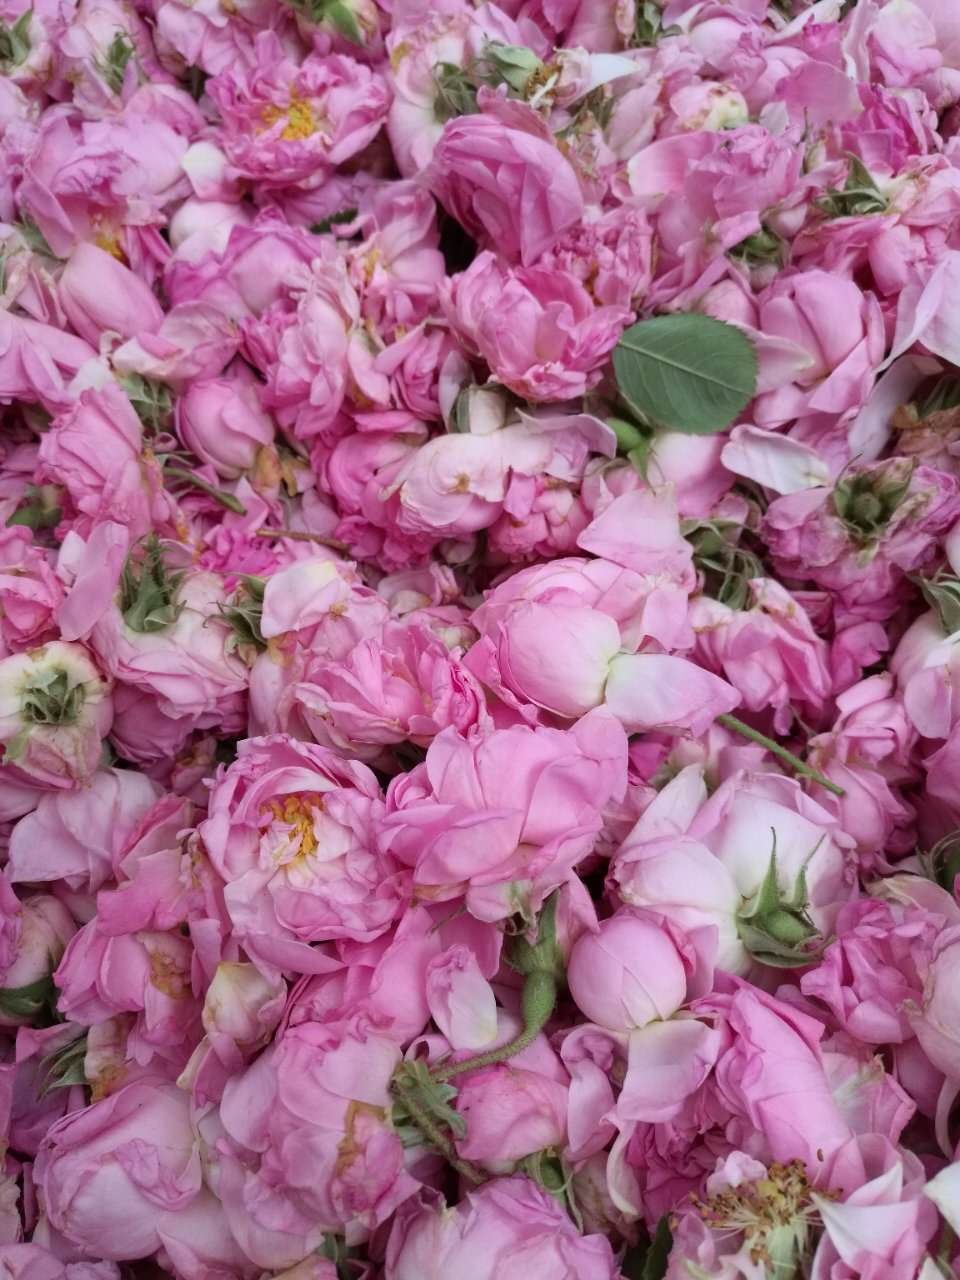 保加利亚大马士革玫瑰鲜花 5斤起拍 顺丰运费到付